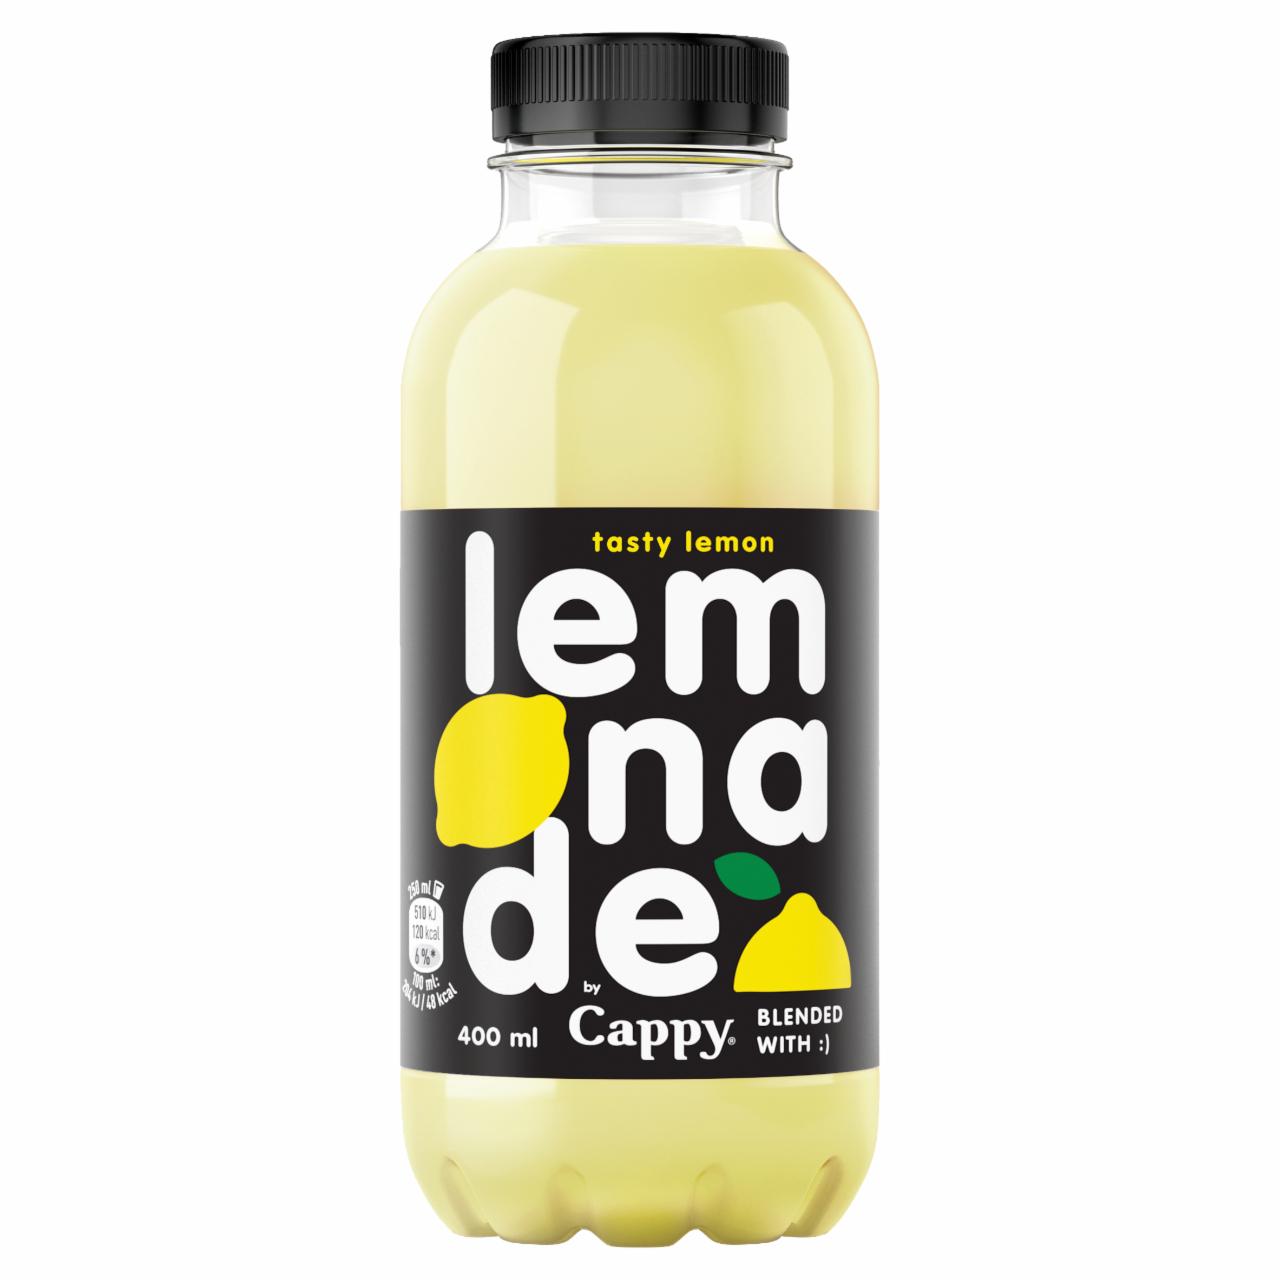 Képek - Cappy Lemonade szénsavmentes citrom ízű üdítőital cukorral és édesítőszerrel 400 ml